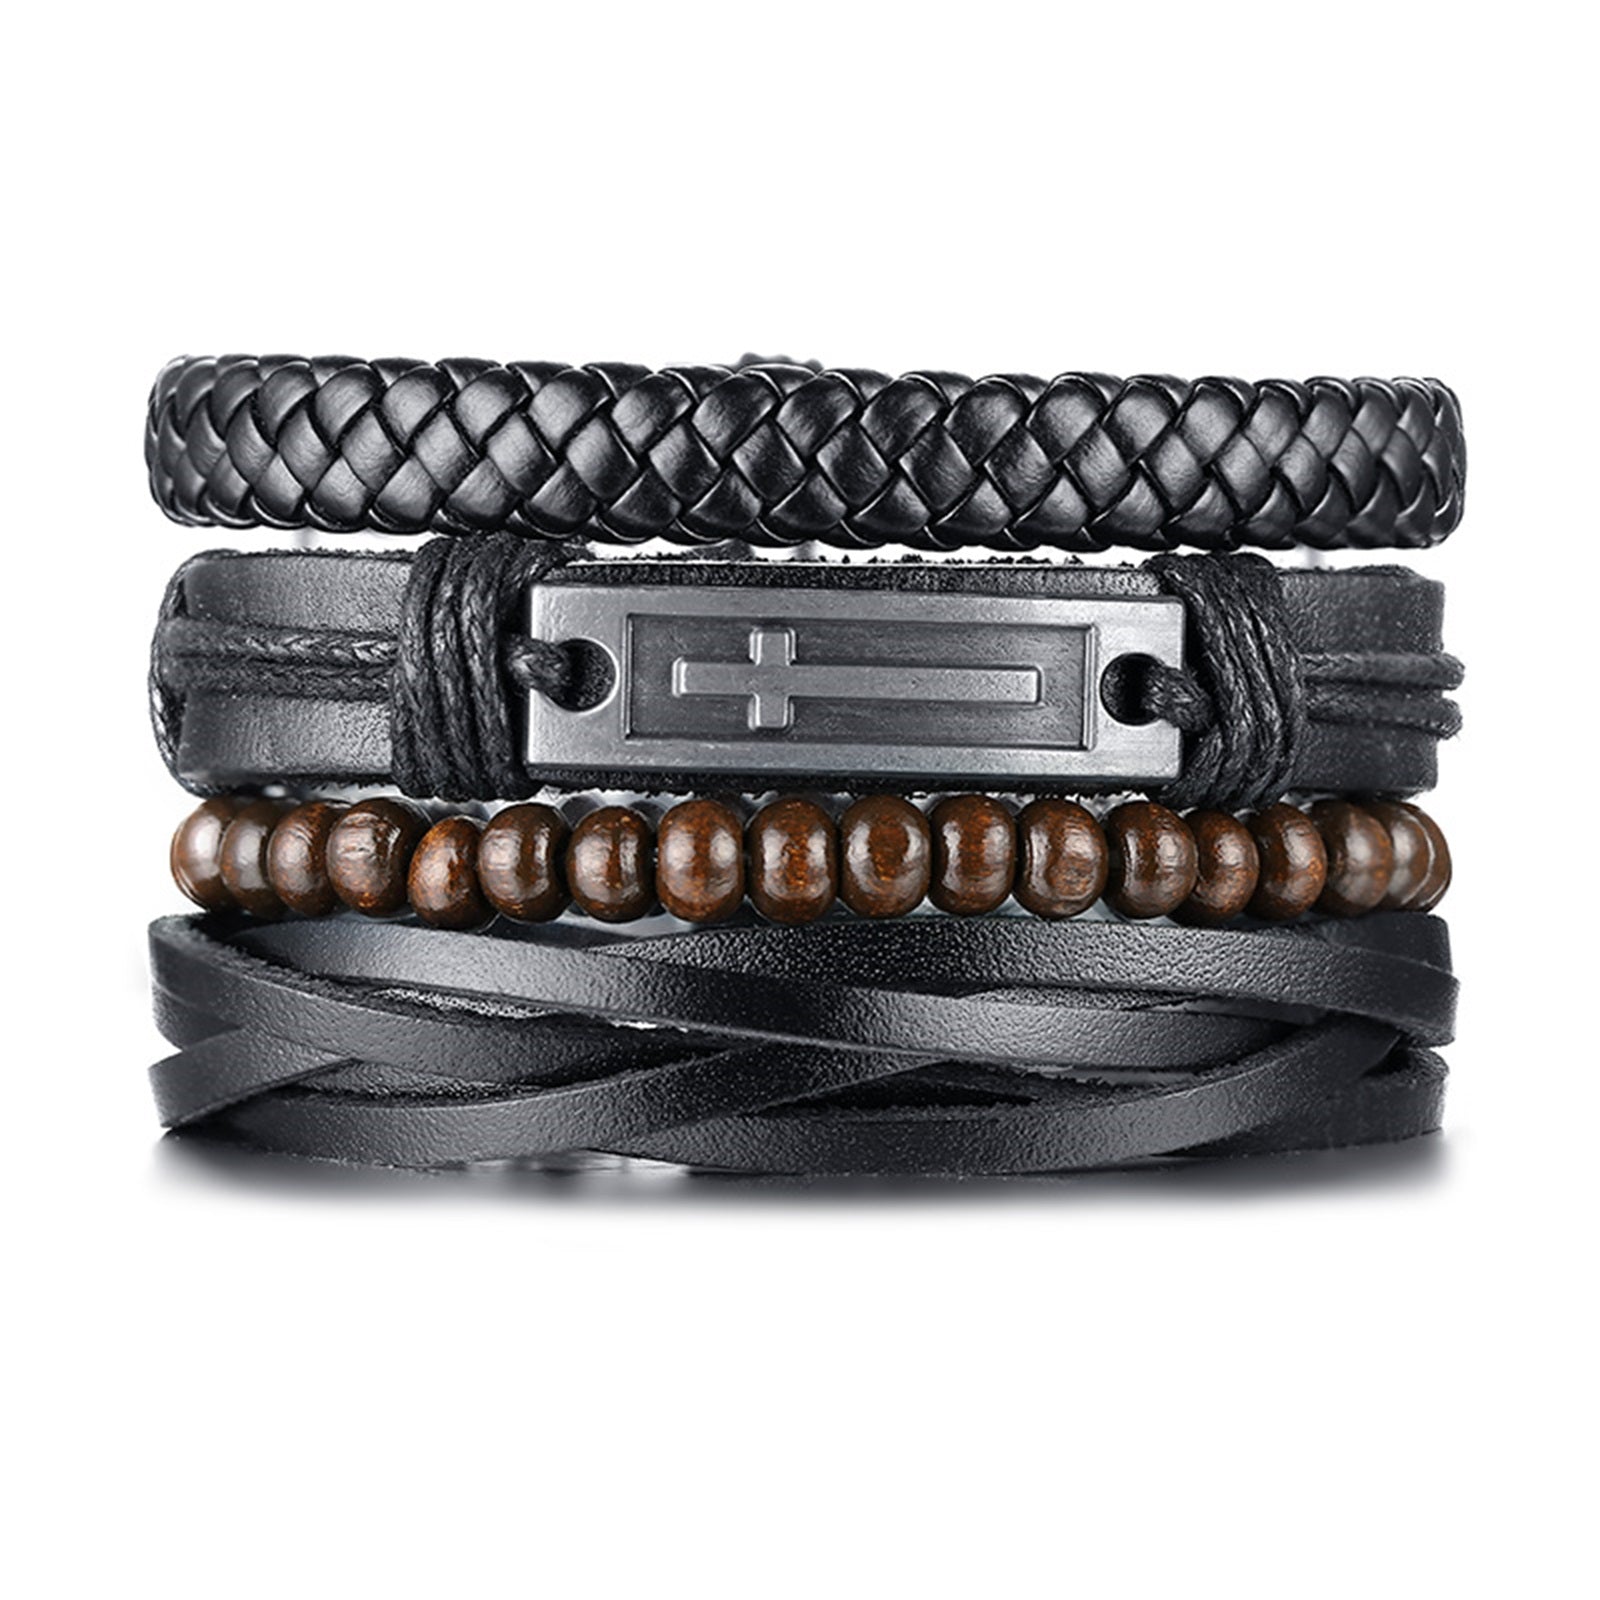 4Pcs Braided Cross PU Adjustable Leather Bracelet Set for Men - Black, Brown